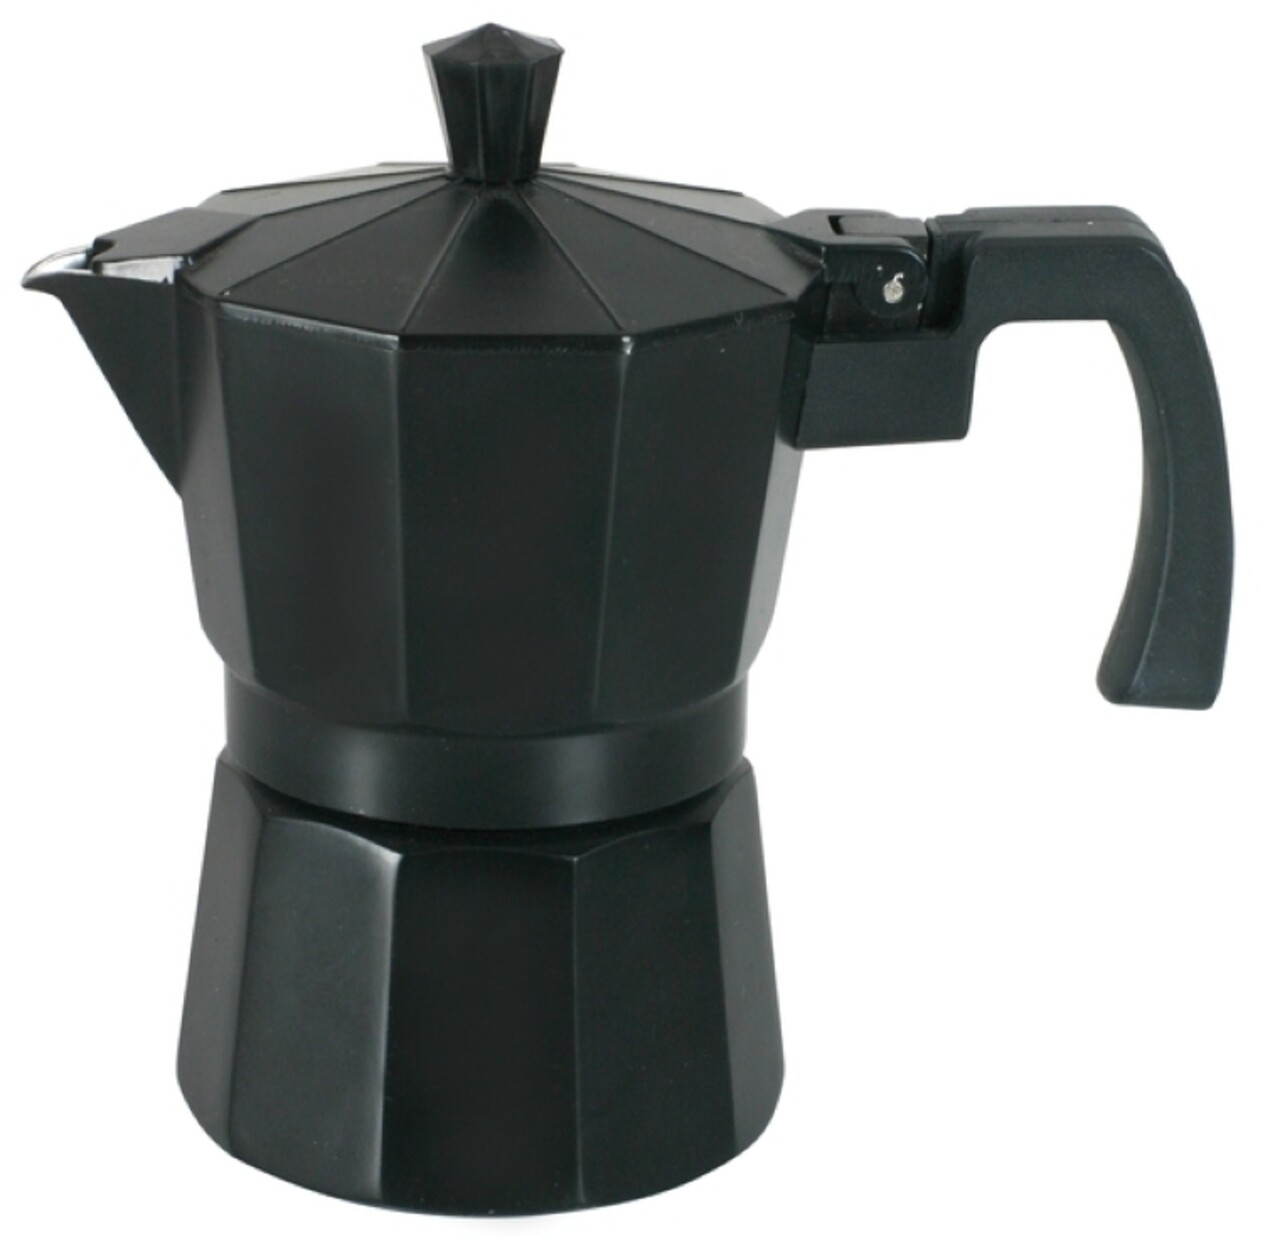 Negra Kávéfőző 6 személyre, Domotti, 300 ml, alumínium, fekete